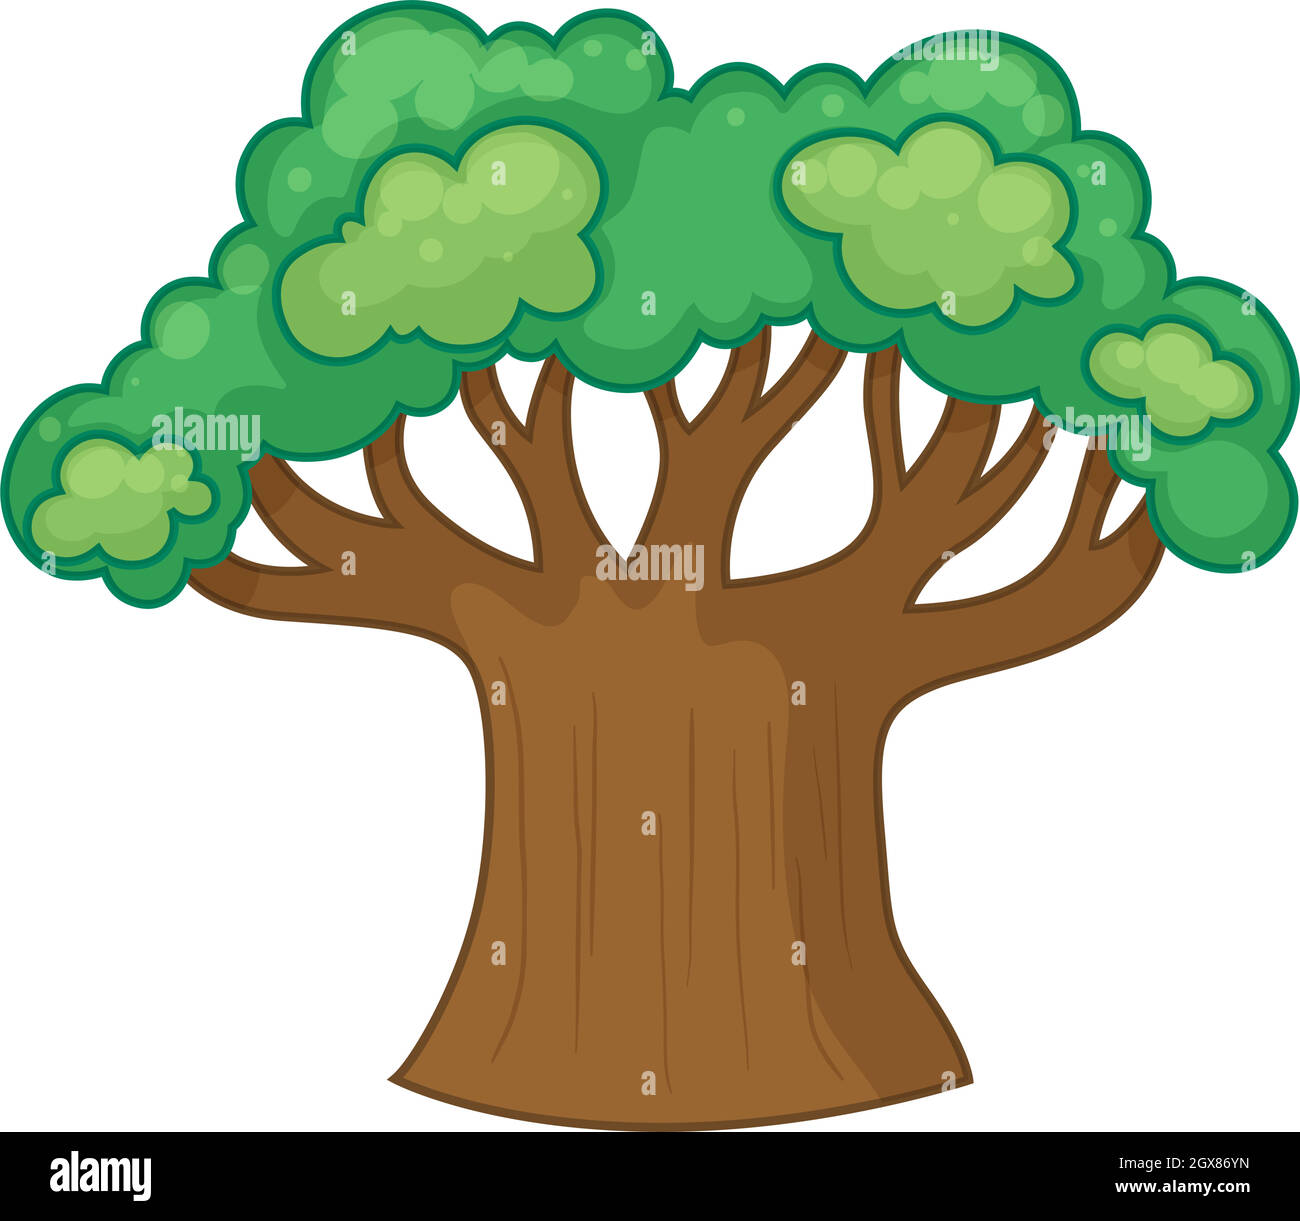 árbol con muchas ramas Imágenes vectoriales de stock - Alamy